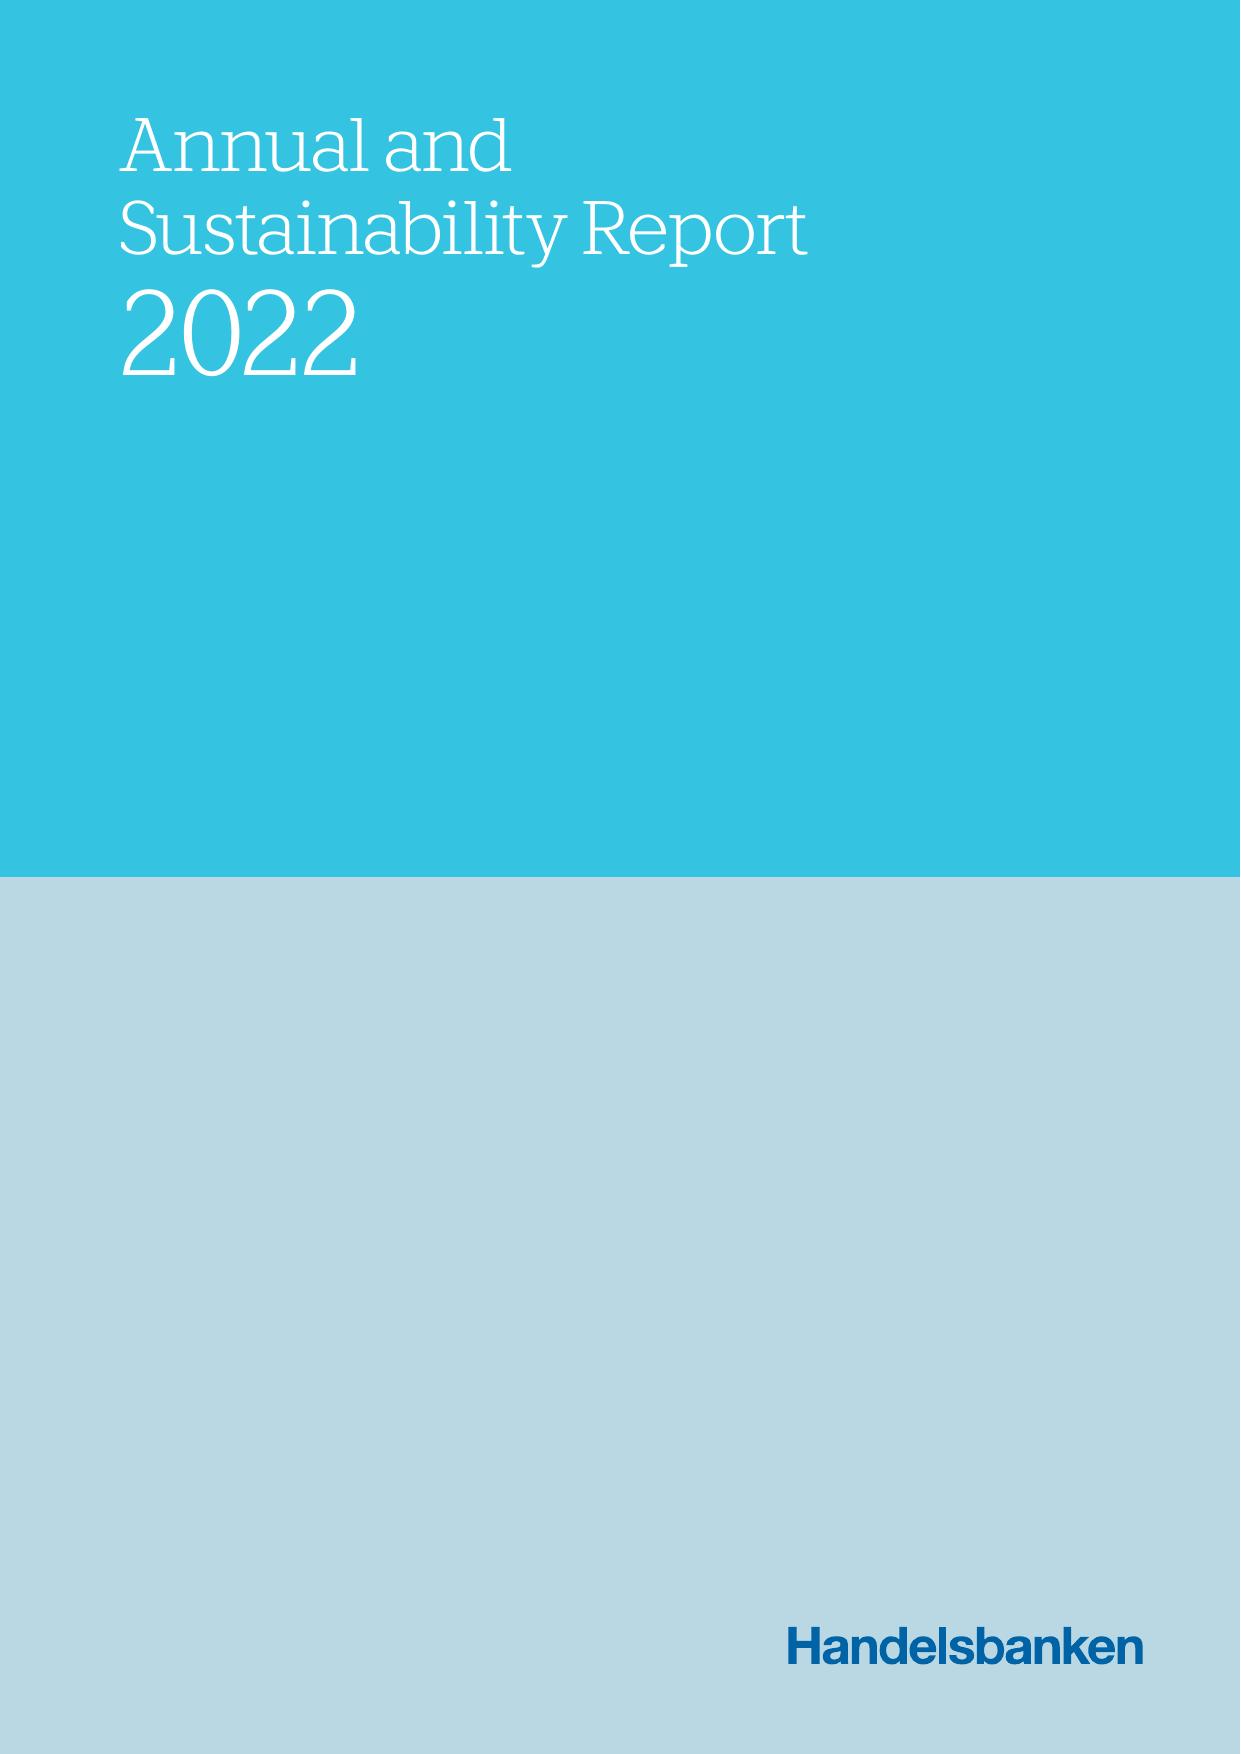 HANDELSBANKEN 2023 Annual Report